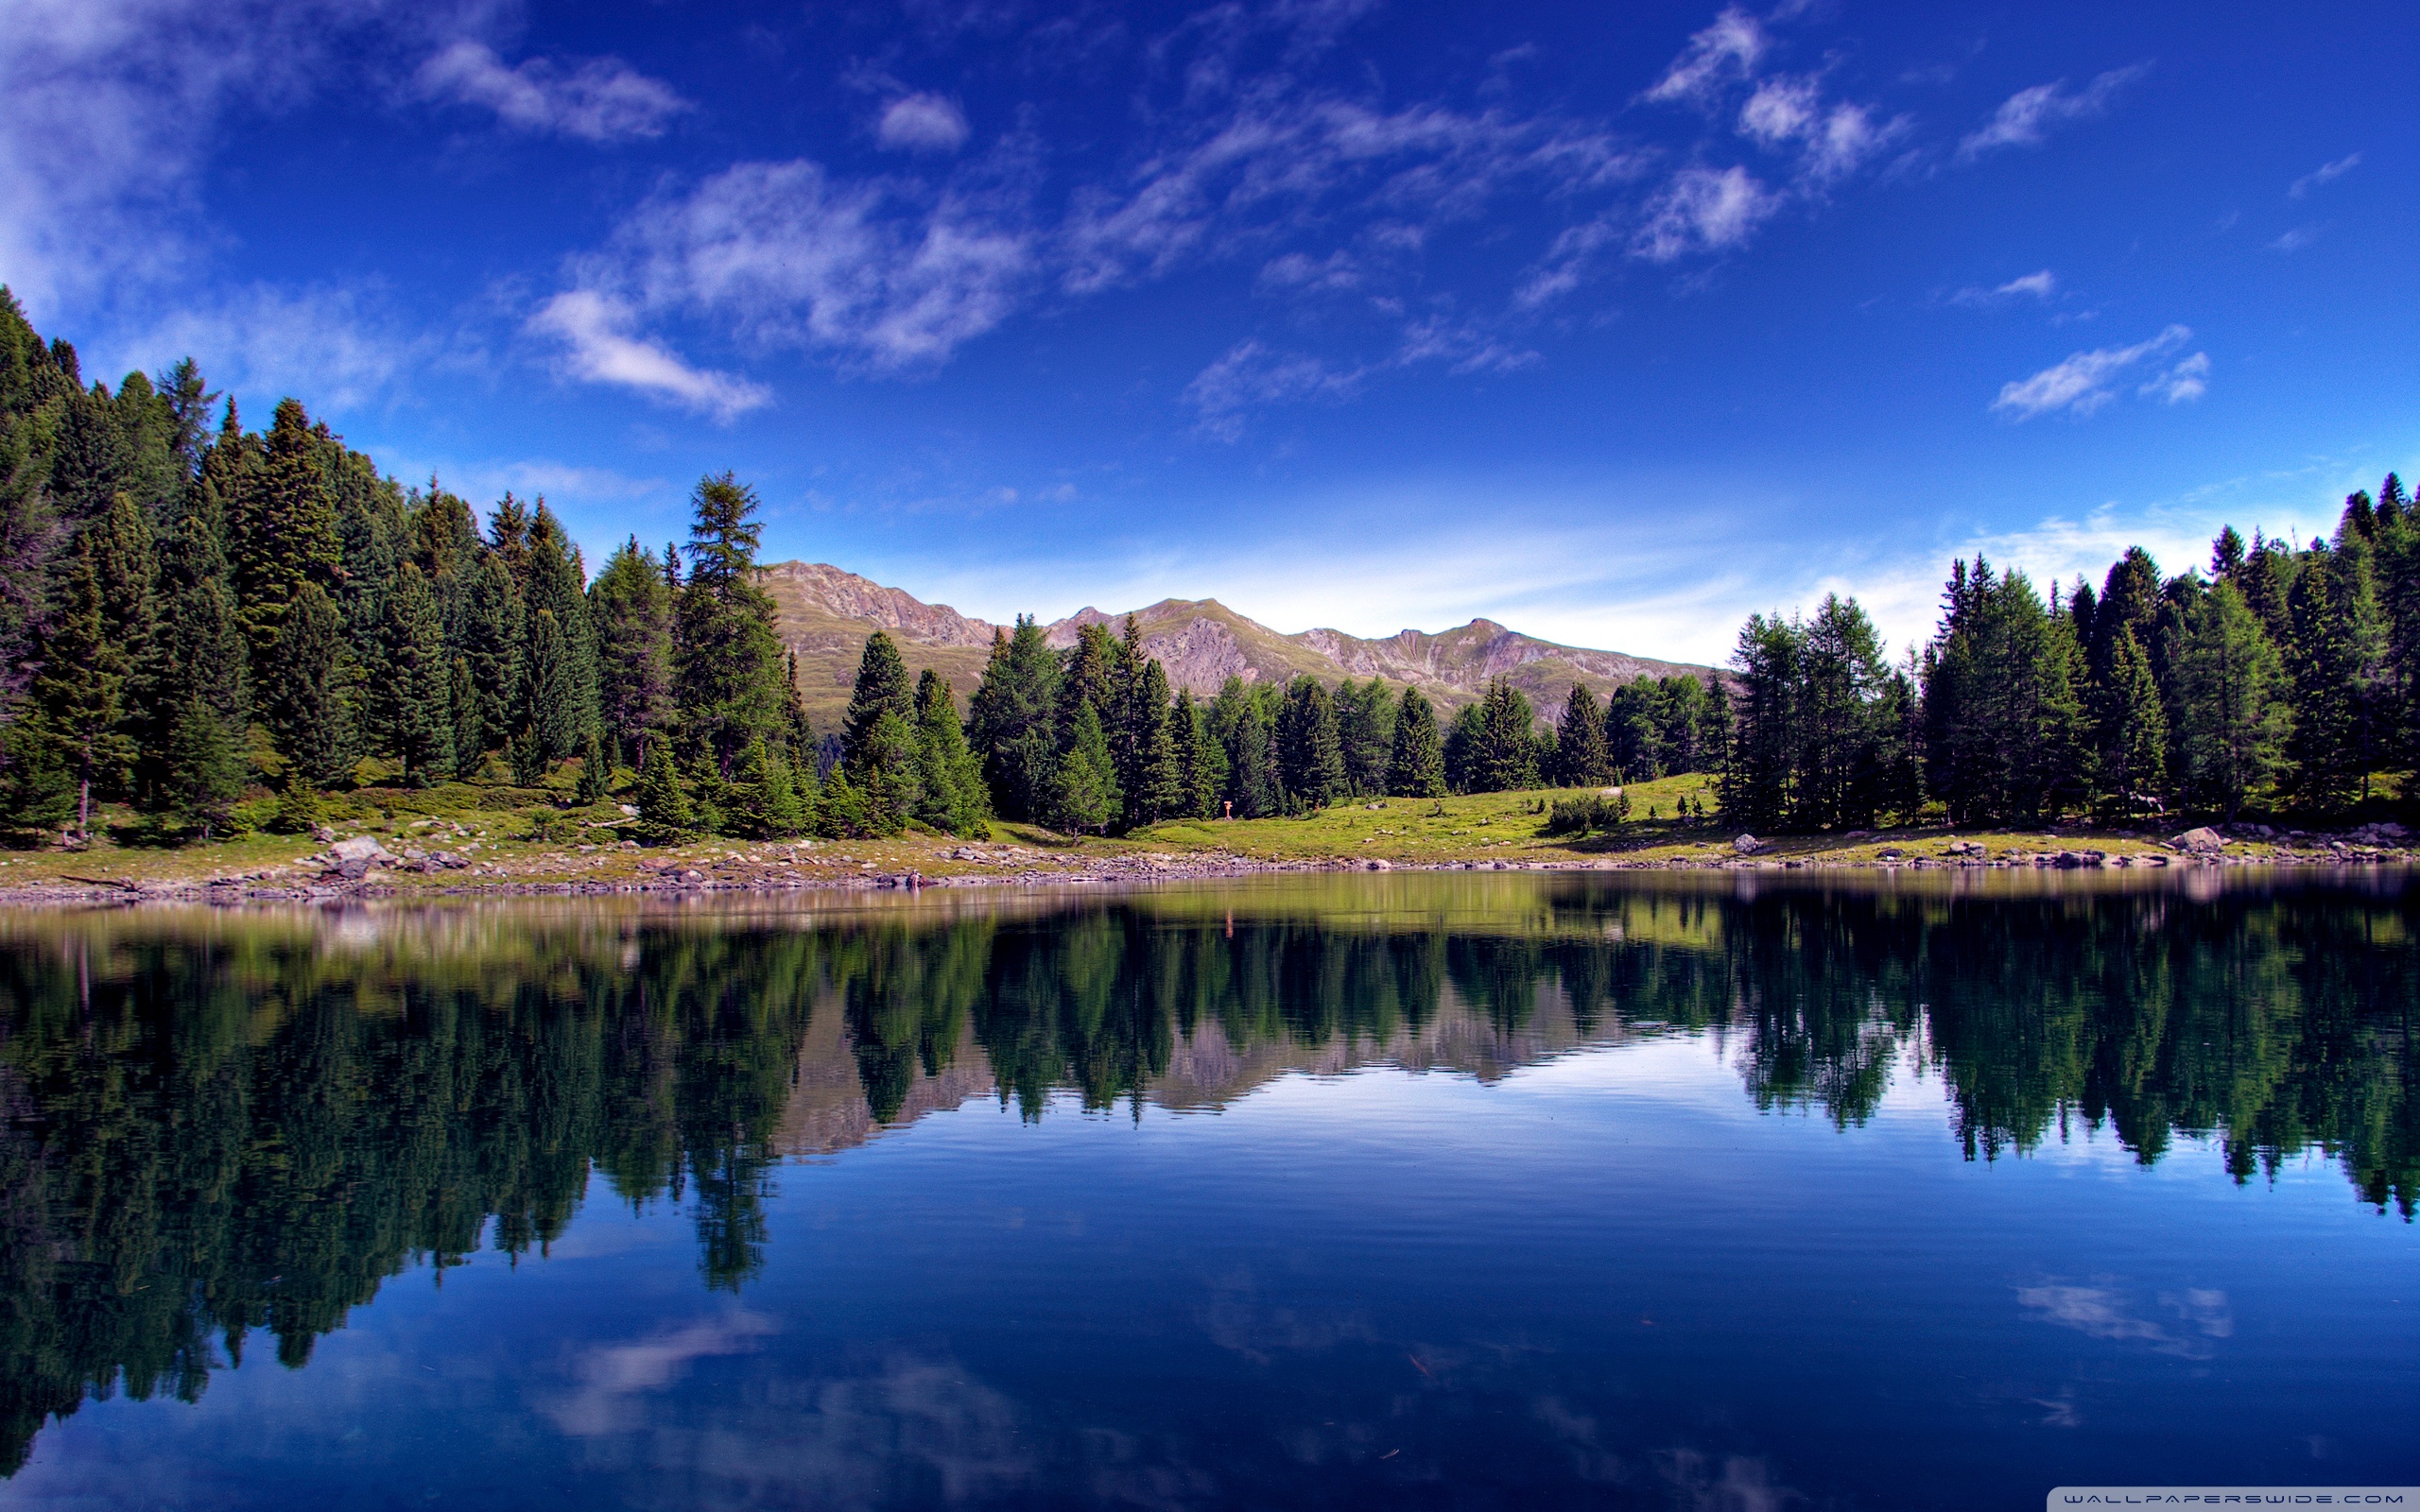 Скачать обои картинки горное озеро на рабочий стол 2560x1600 бесплатно.